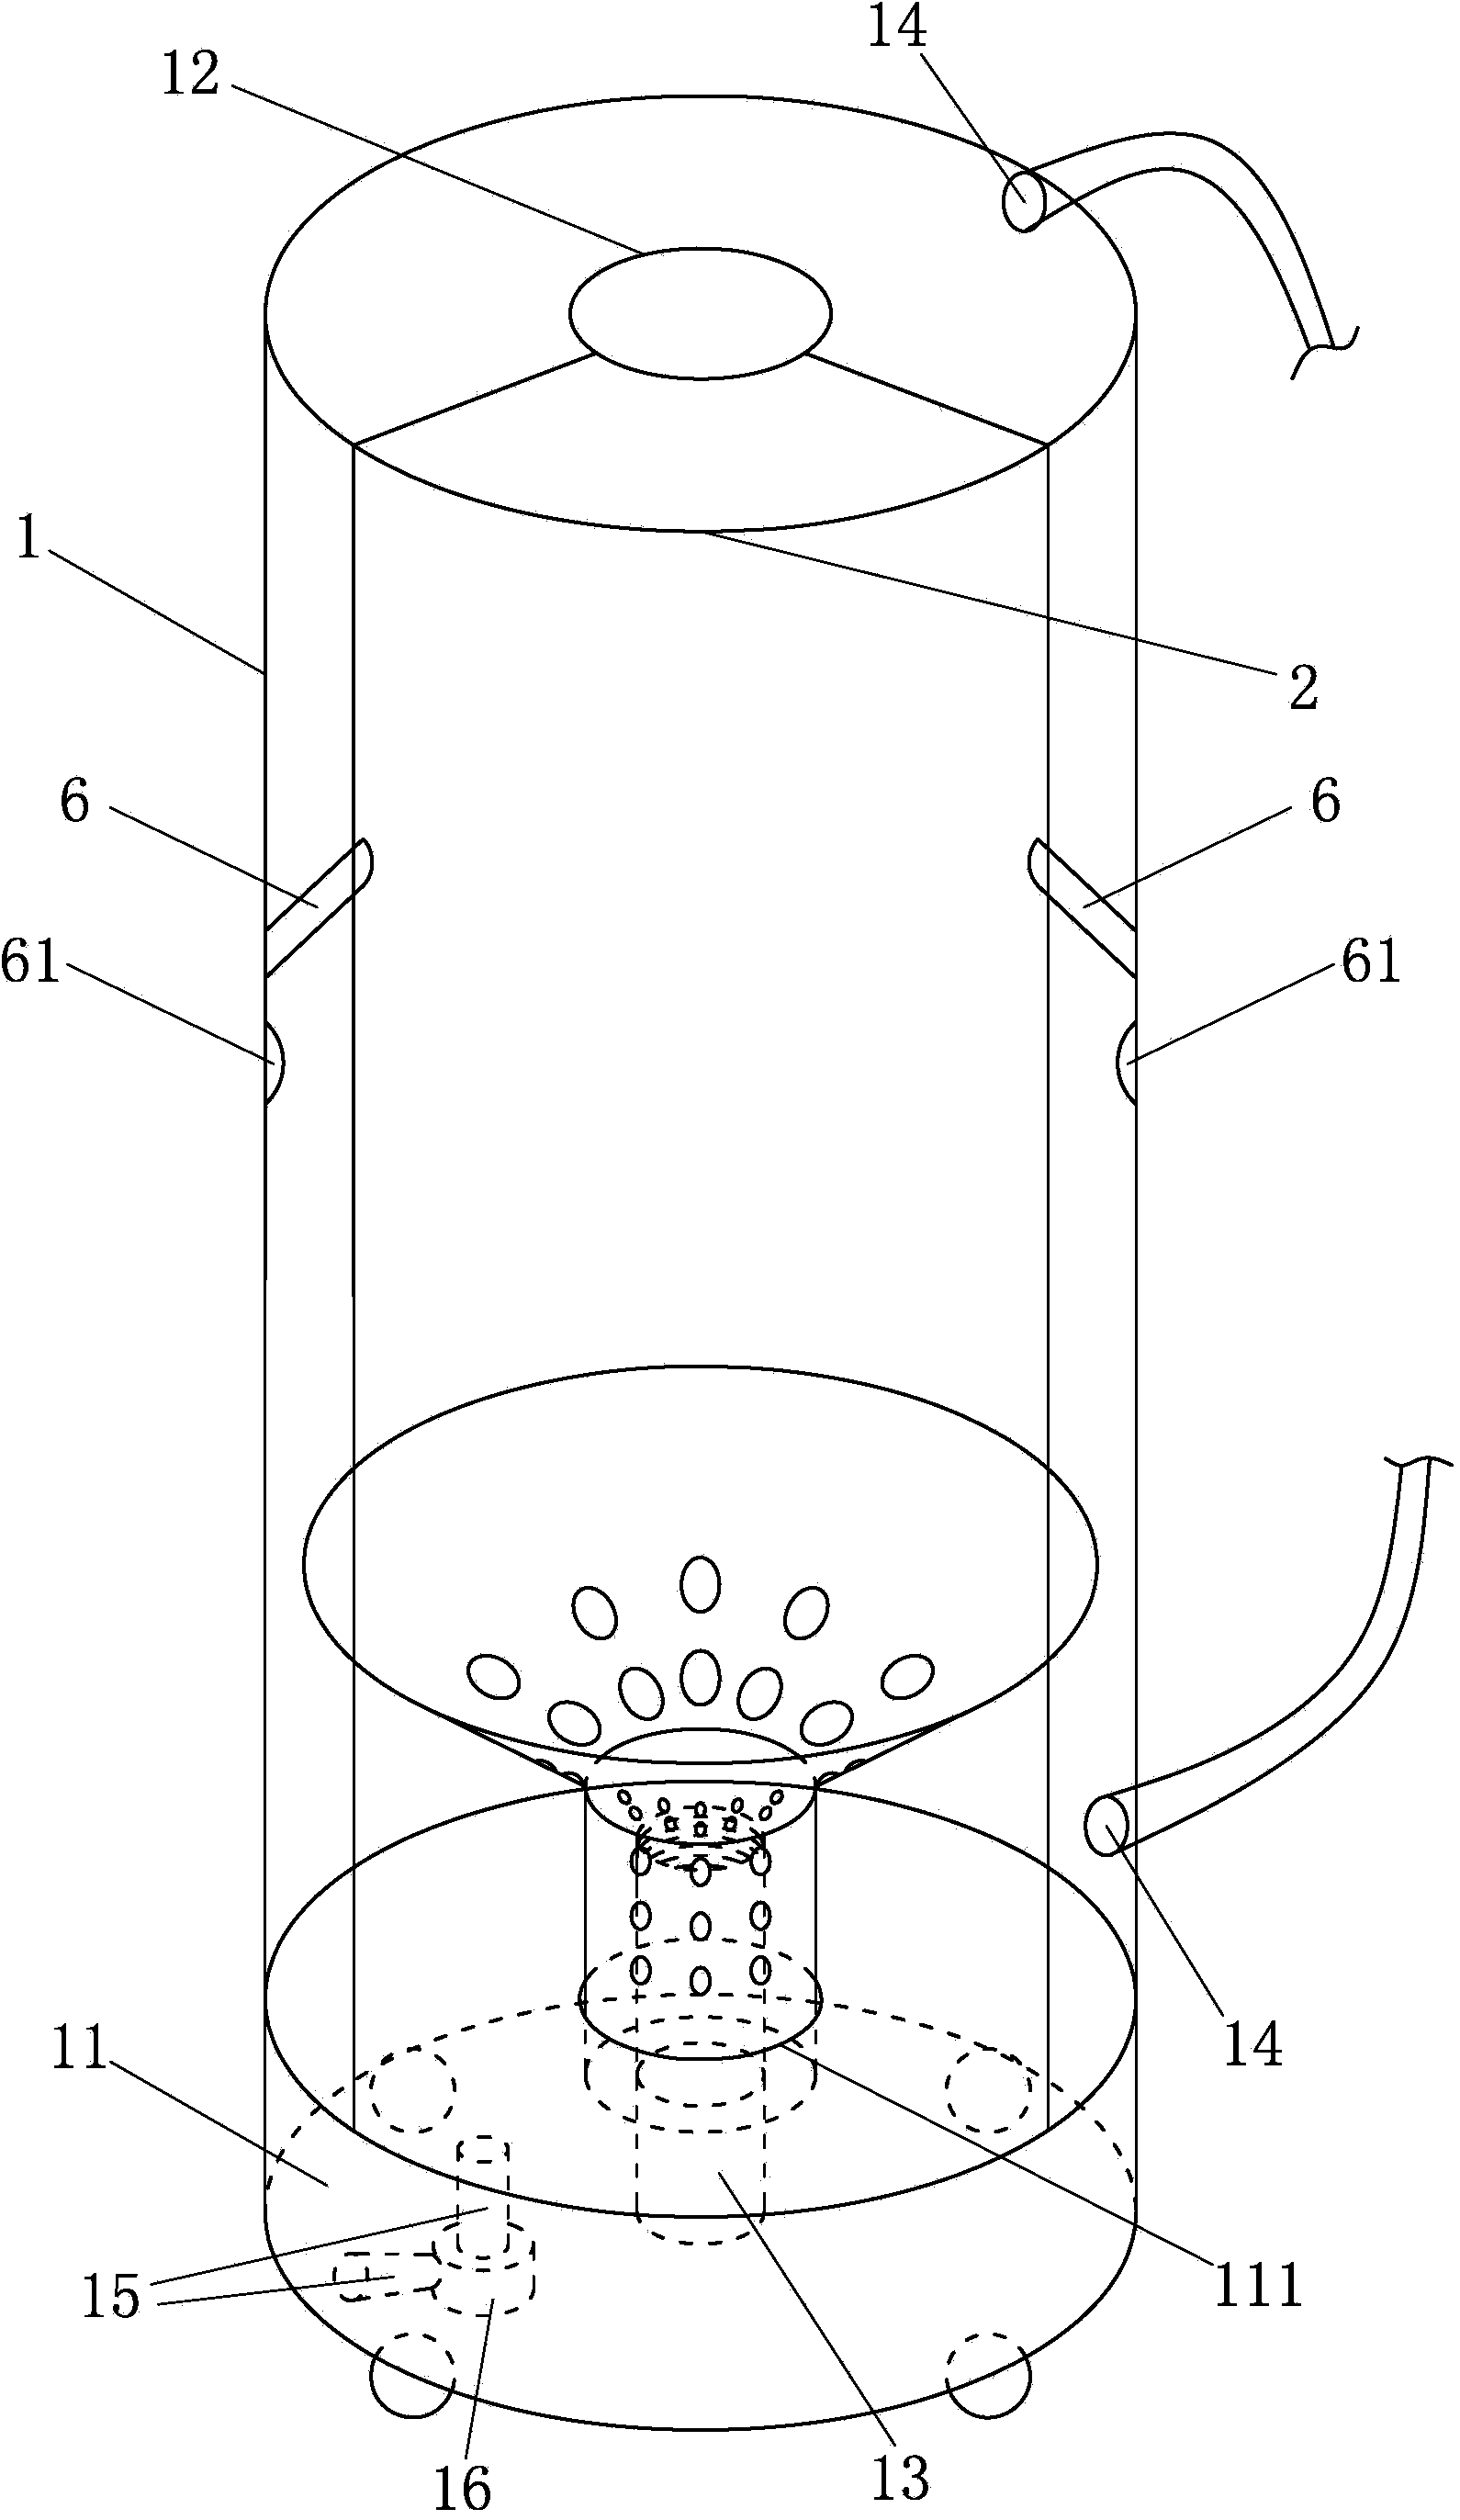 Water vortex showering machine